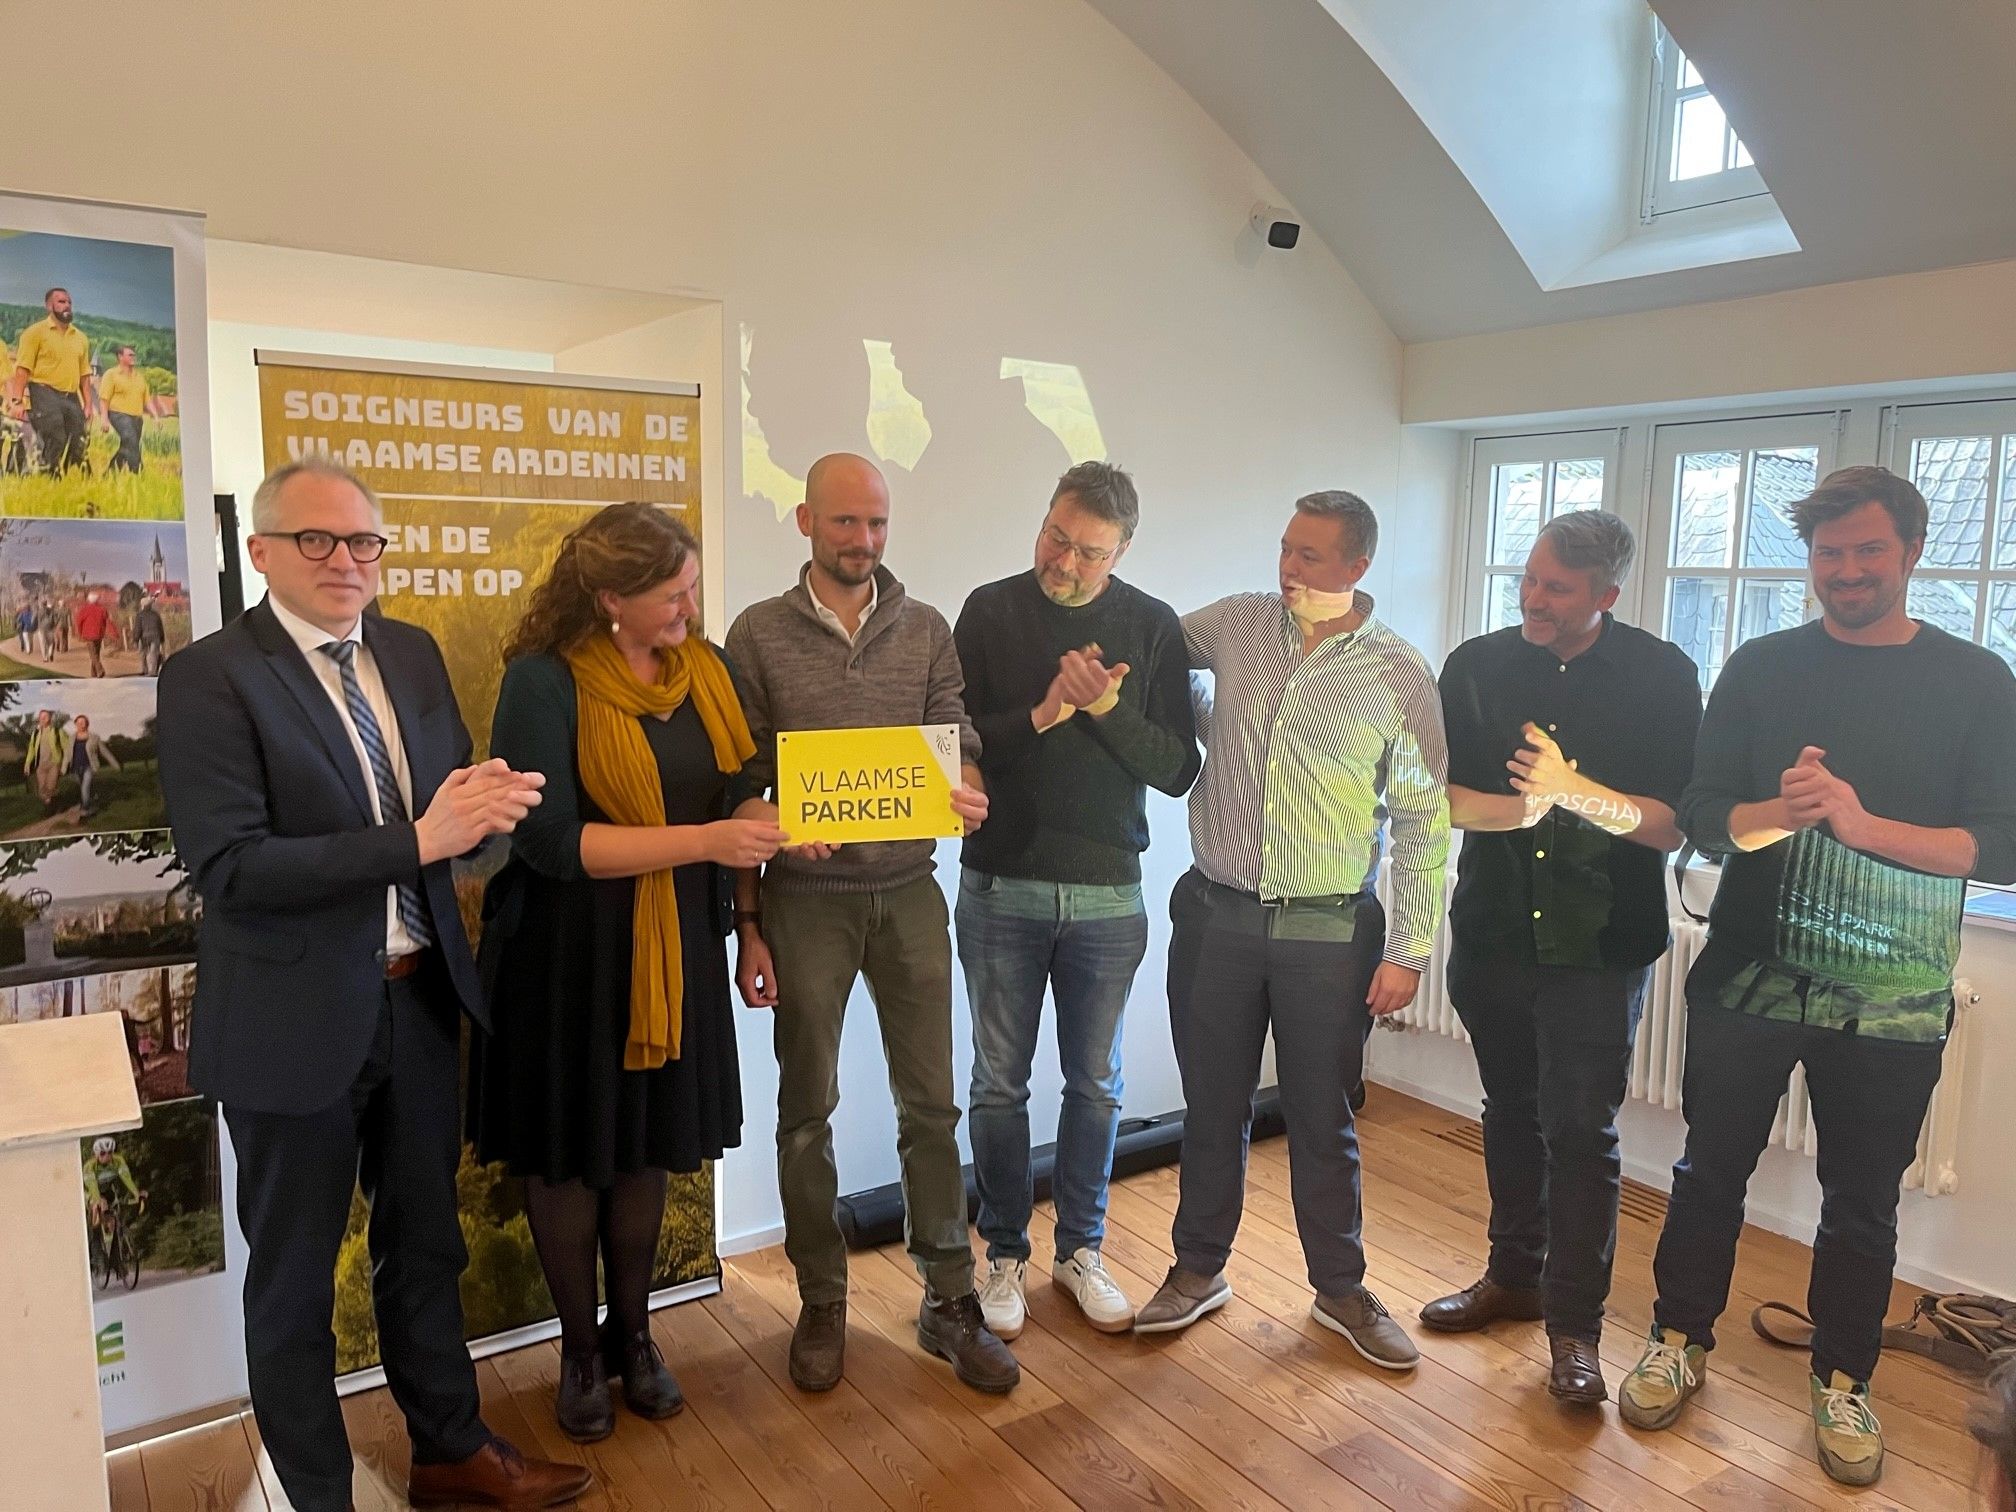 ©Provincie Oost-Vlaanderen - Op 24 november kreeg de gebiedscoalitie van de Vlaamse Ardennen het label ‘Landschapspark’ uit de handen van minister Matthias Diependaele. Meer dan 150 soigneurs kwamen samen om de erkenning van hun Landschapspark samen te vieren.